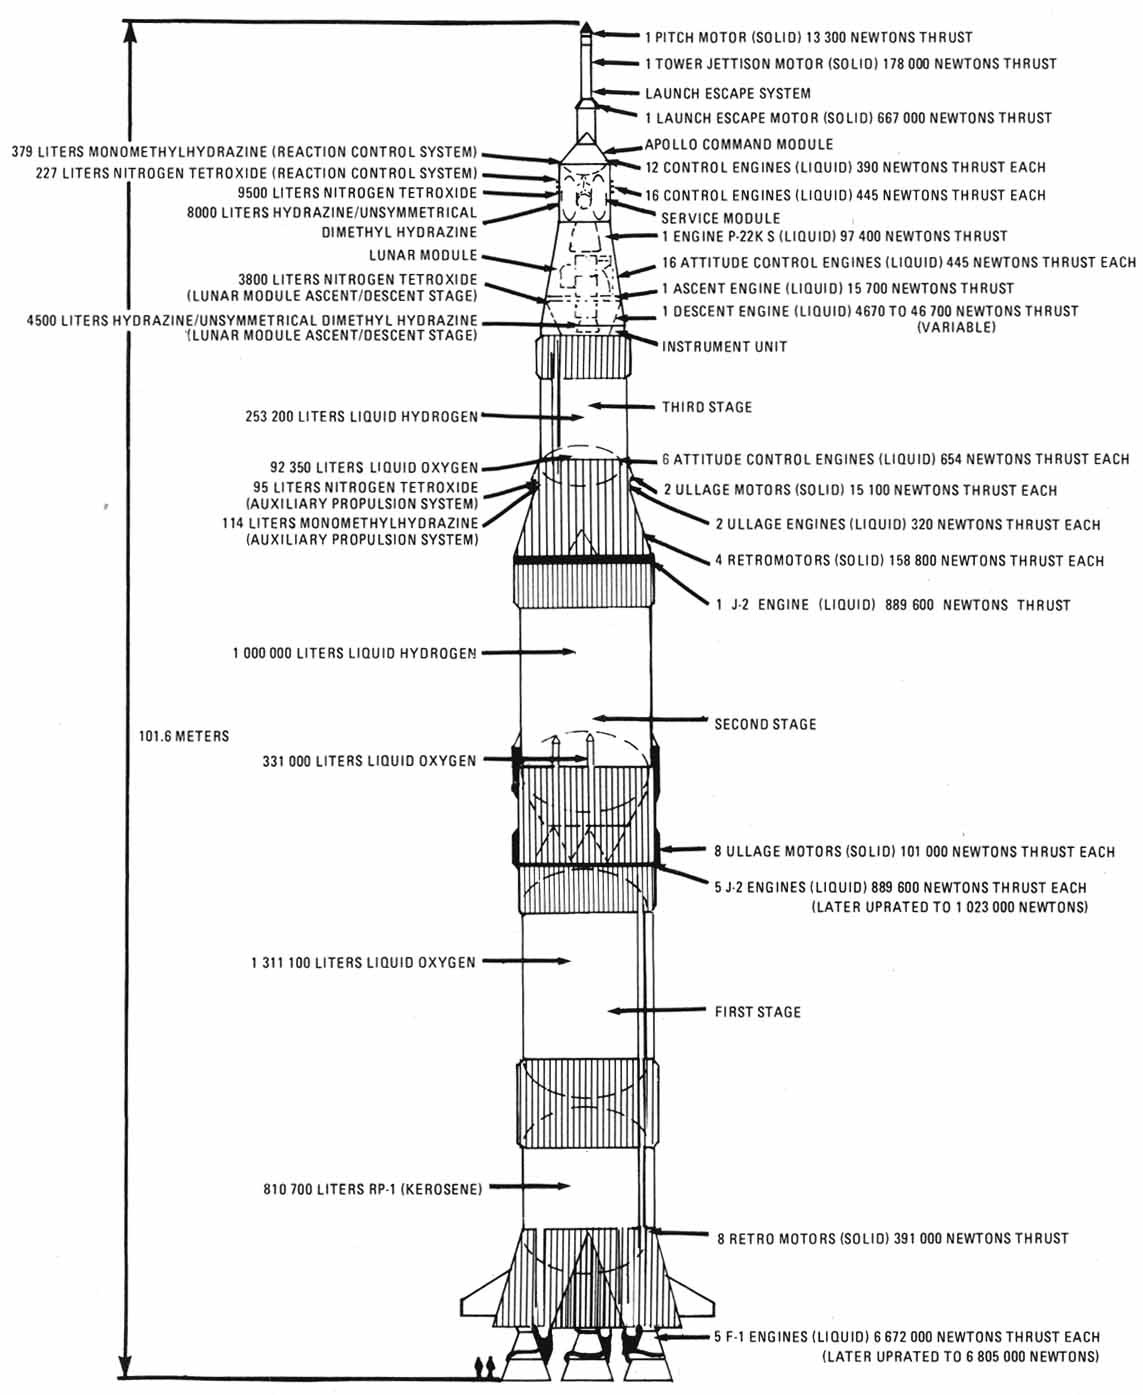 Saturn V rocket schematic.